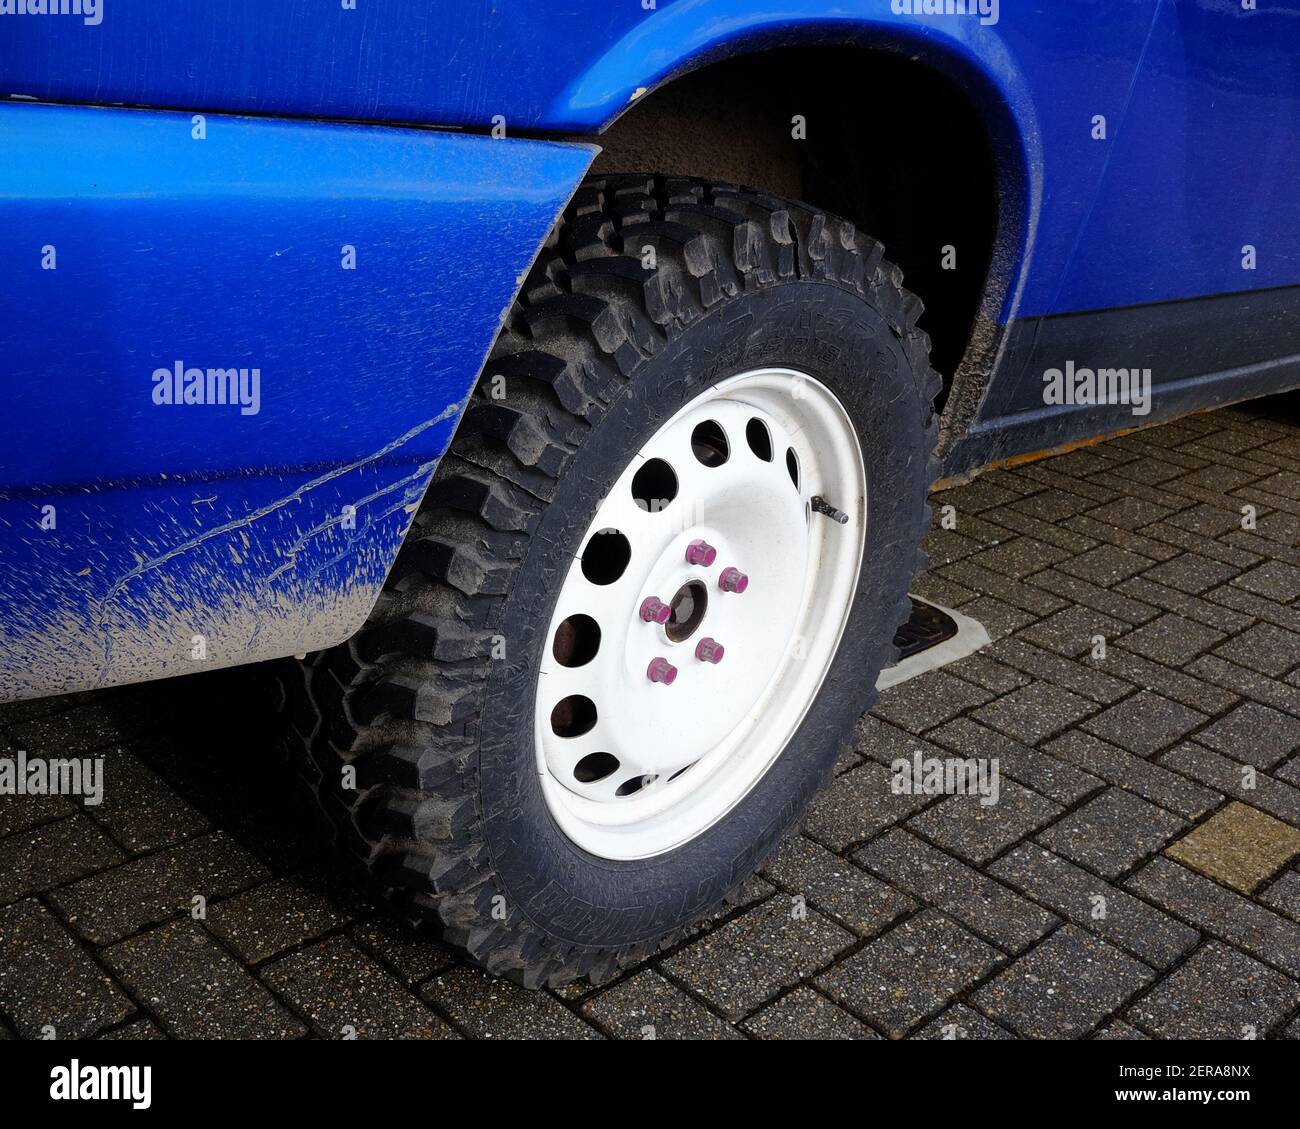 Febbraio 2021 - Volkswagen VW T4 trasportatore convertito in a. camper con pneumatici da palude sovradimensionati Foto Stock